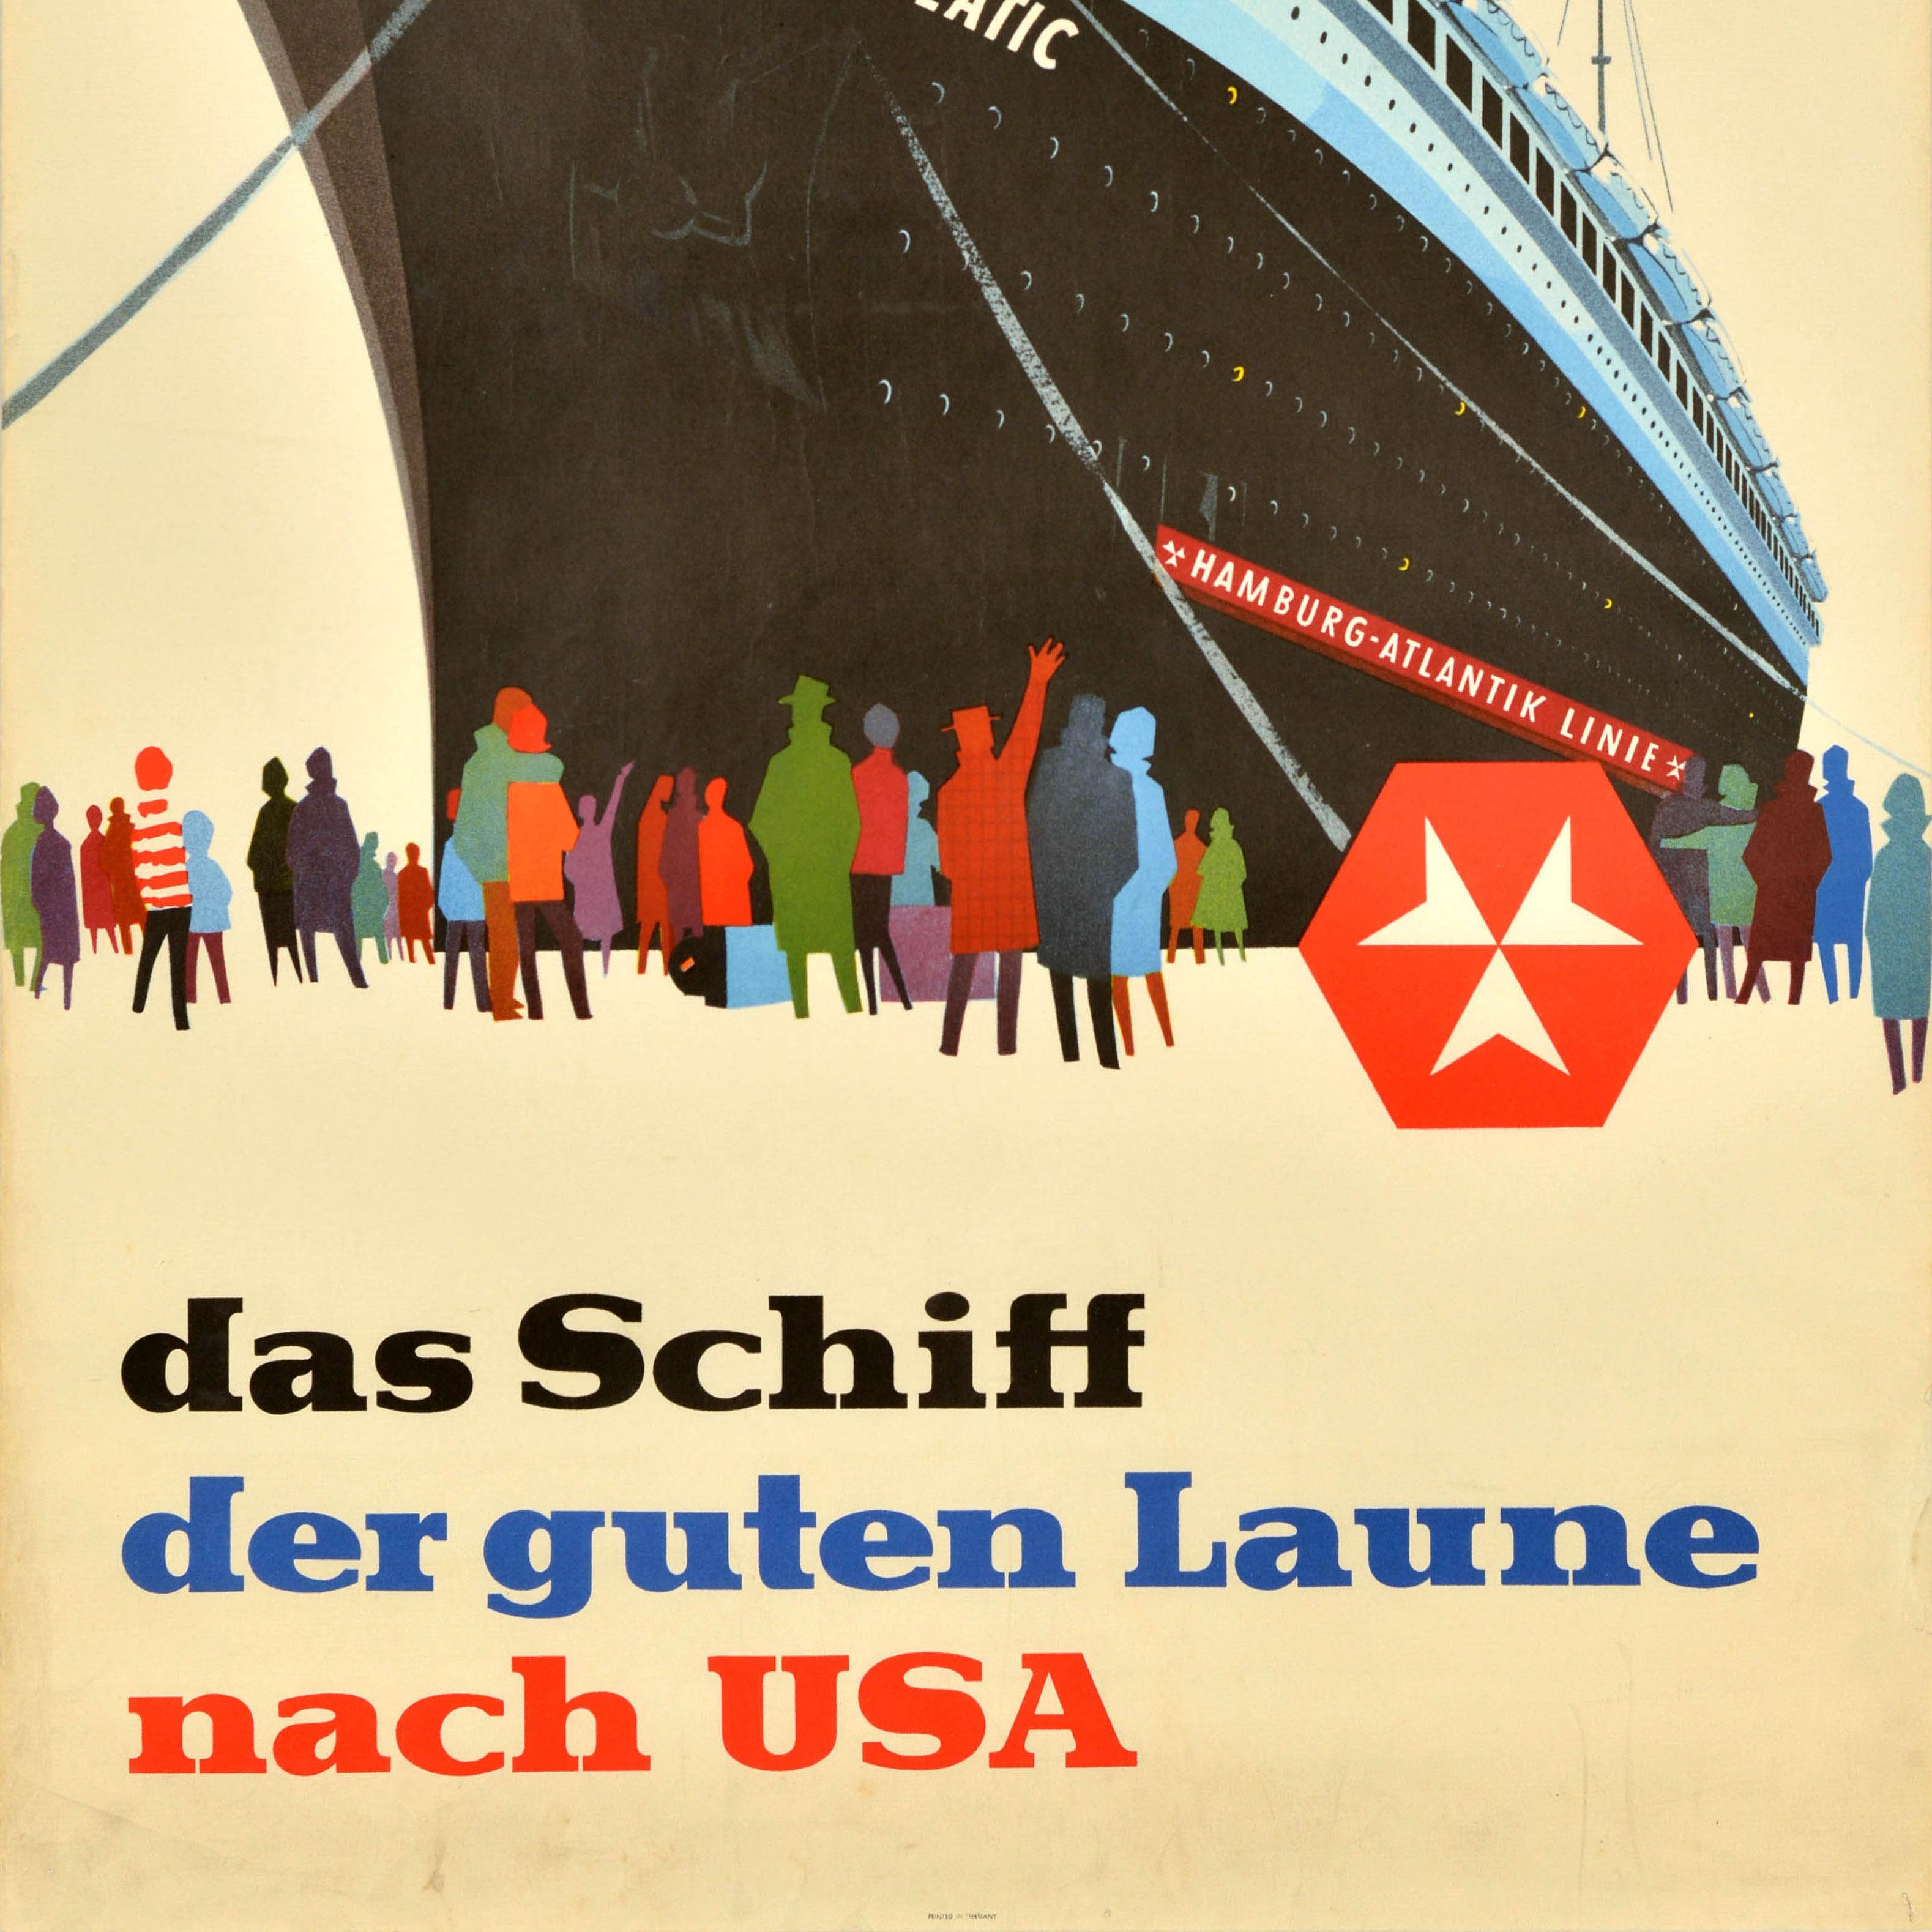 Originales Werbeplakat für die Hamburg Atlantik Linie mit einer Illustration von Menschen in Form von bunten Silhouetten, die einem Schiff mit dem Namen Hanseatic zuwinken und zu ihm hinaufblicken. Darunter steht der Text: 